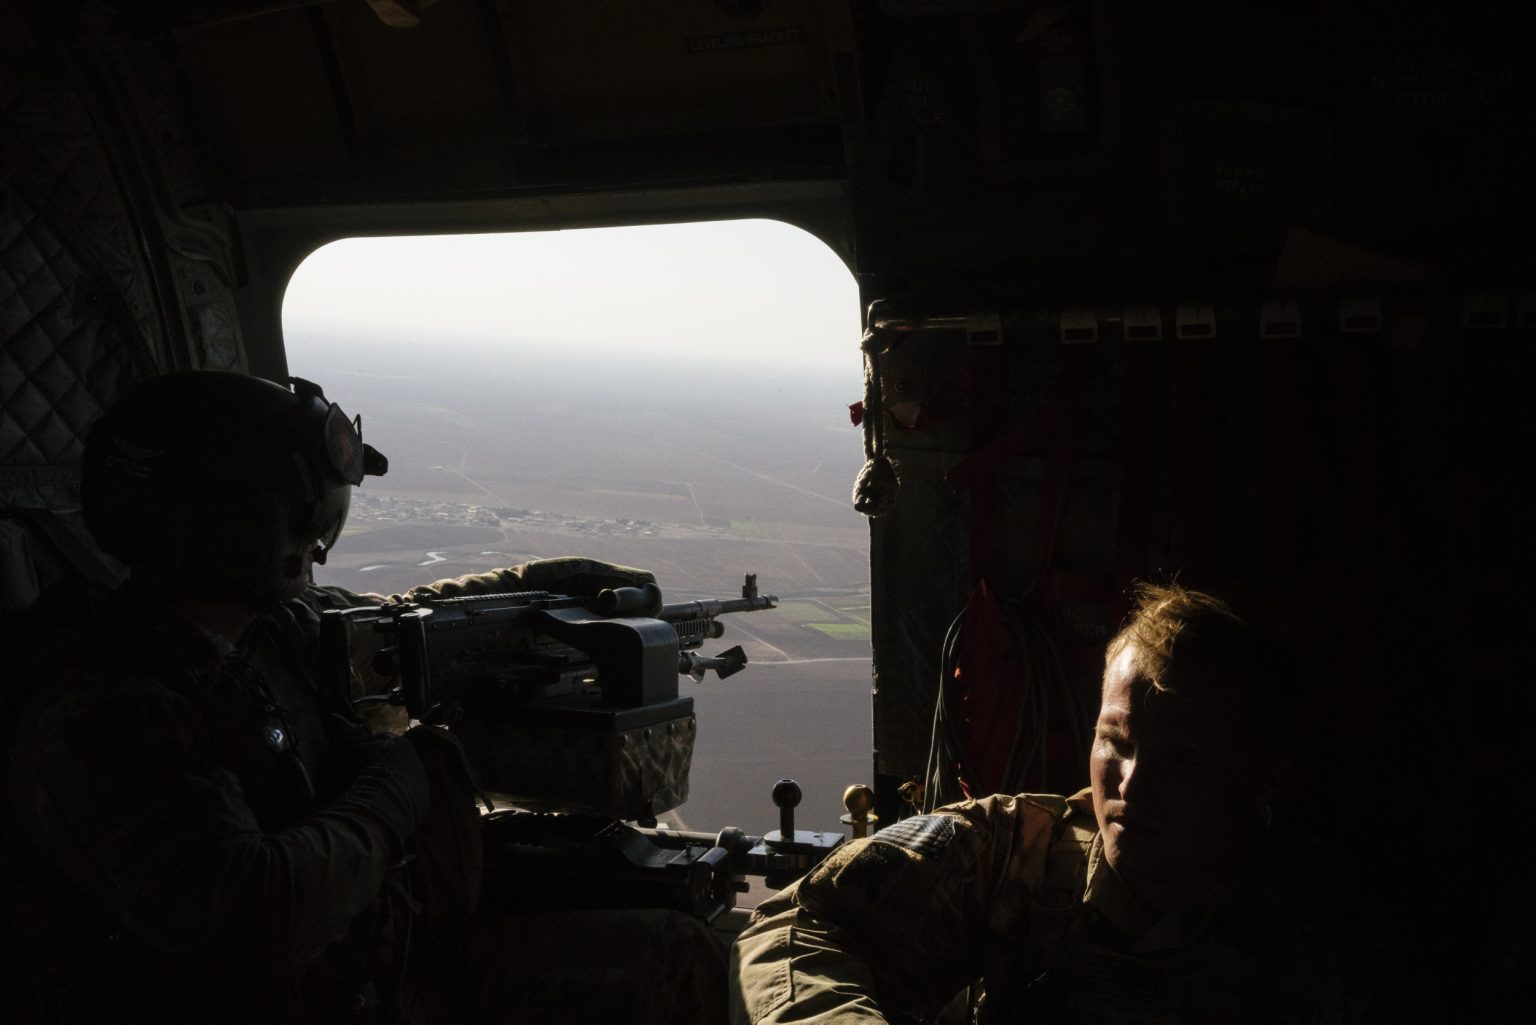 SYRIA. August 26, 2021 - A U.S. Army CH-47 Chinook helicopter gunner scans the area while transporting troops over northeastern Syria.

SIRIA. 26 agosto 2021 - Un mitragliere dell'esercito americano controlla l'area di sorvolo mentre trasporta truppe nel nord-est della Siria.